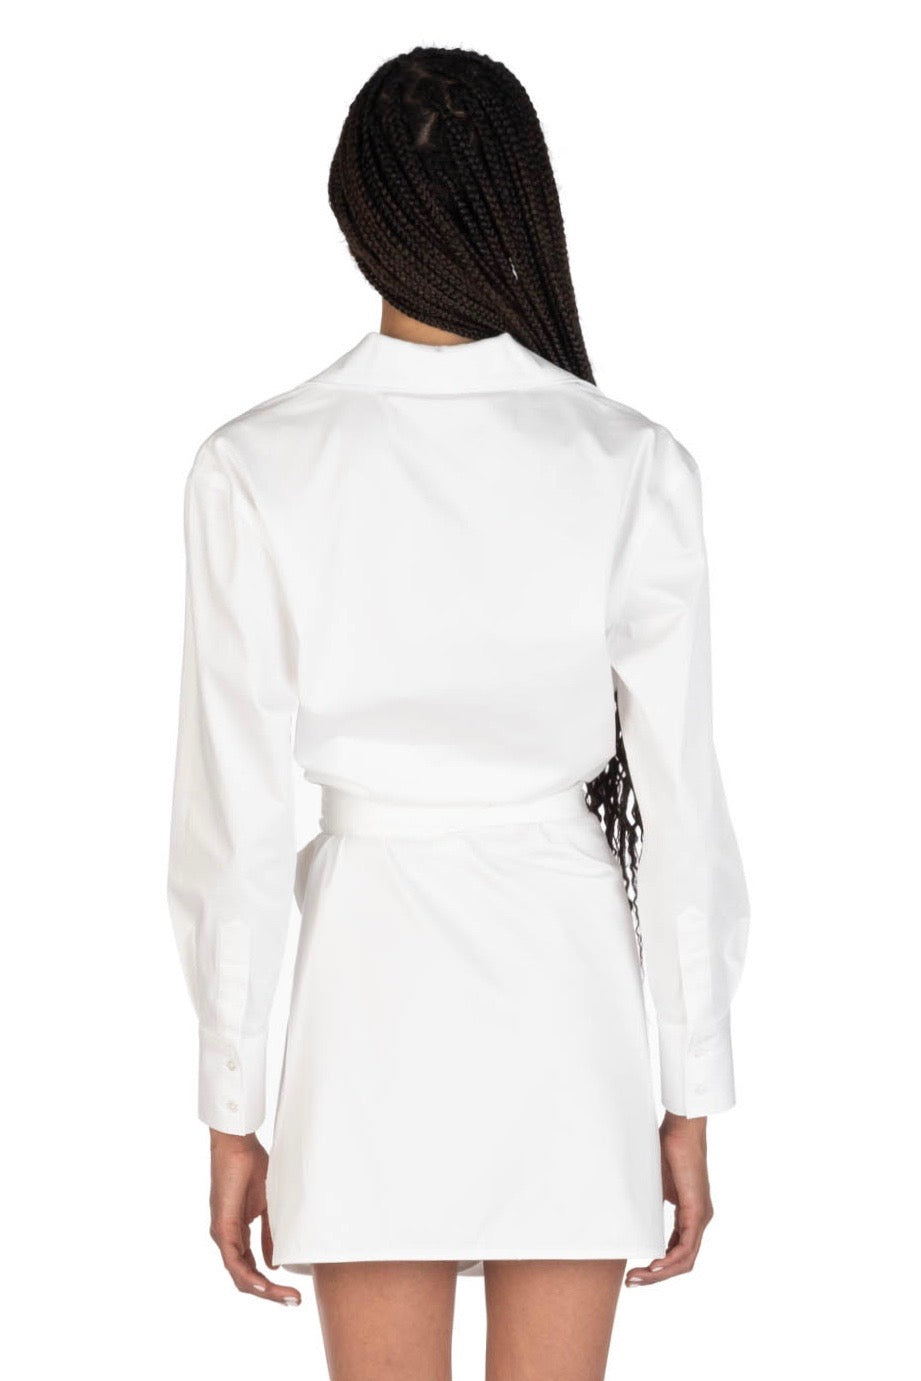 WRAP DRESS - White